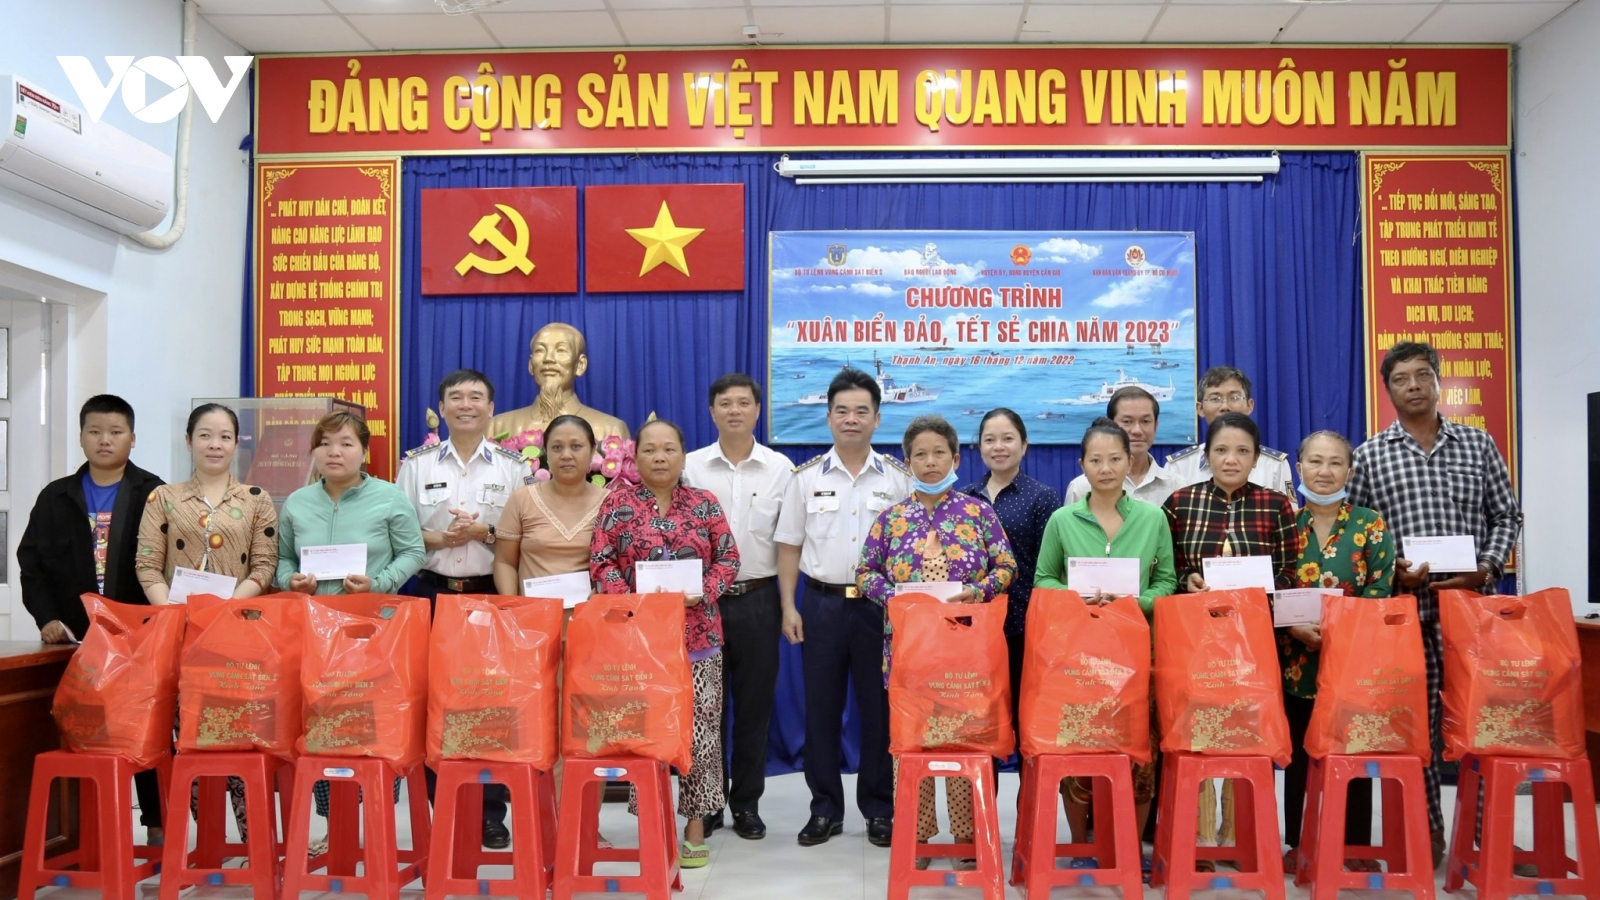 Tặng 2.500 lá cờ Tổ quốc cho ngư dân huyện Cần Giờ, TP.HCM